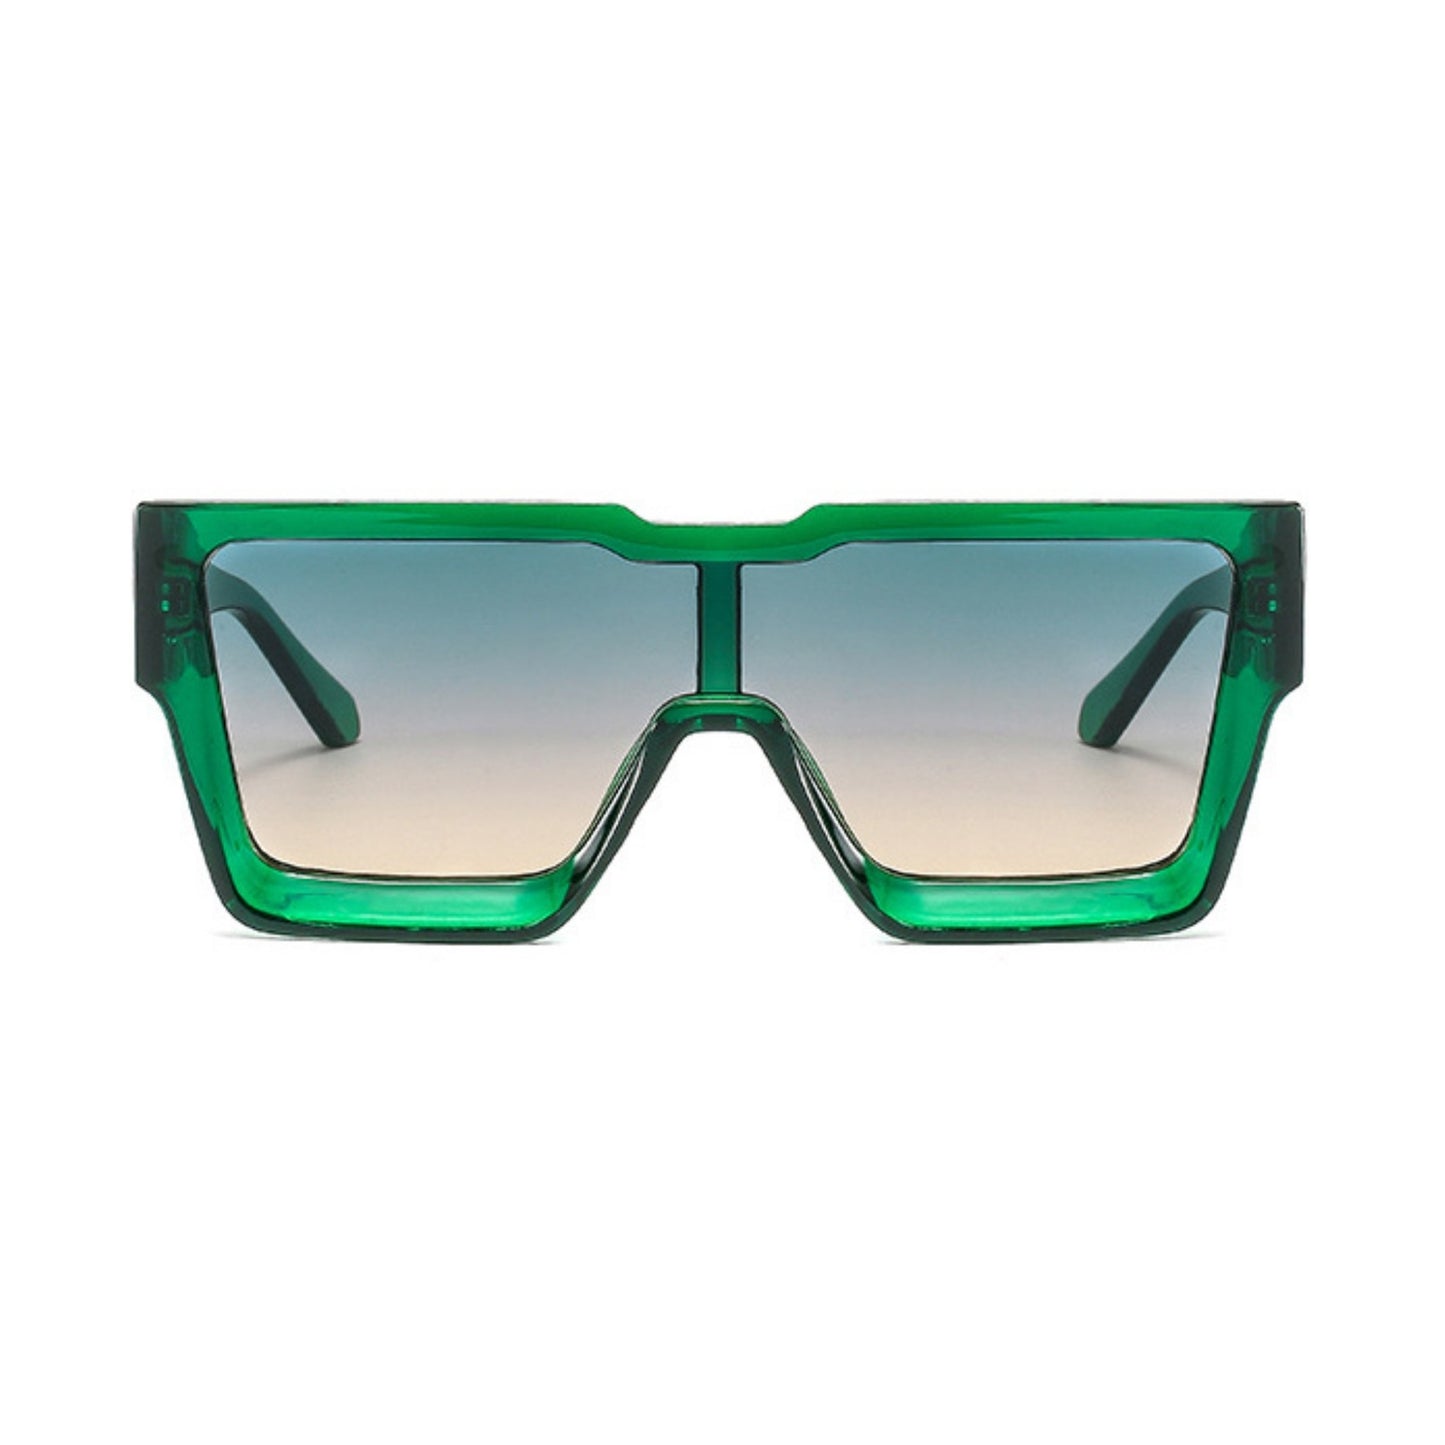 Γυαλιά ηλίου Toronto (Μάσκα) από την Exposure Sunglasses με προστασία UV400 με πράσινο σκελετό και μαύρο φακό.